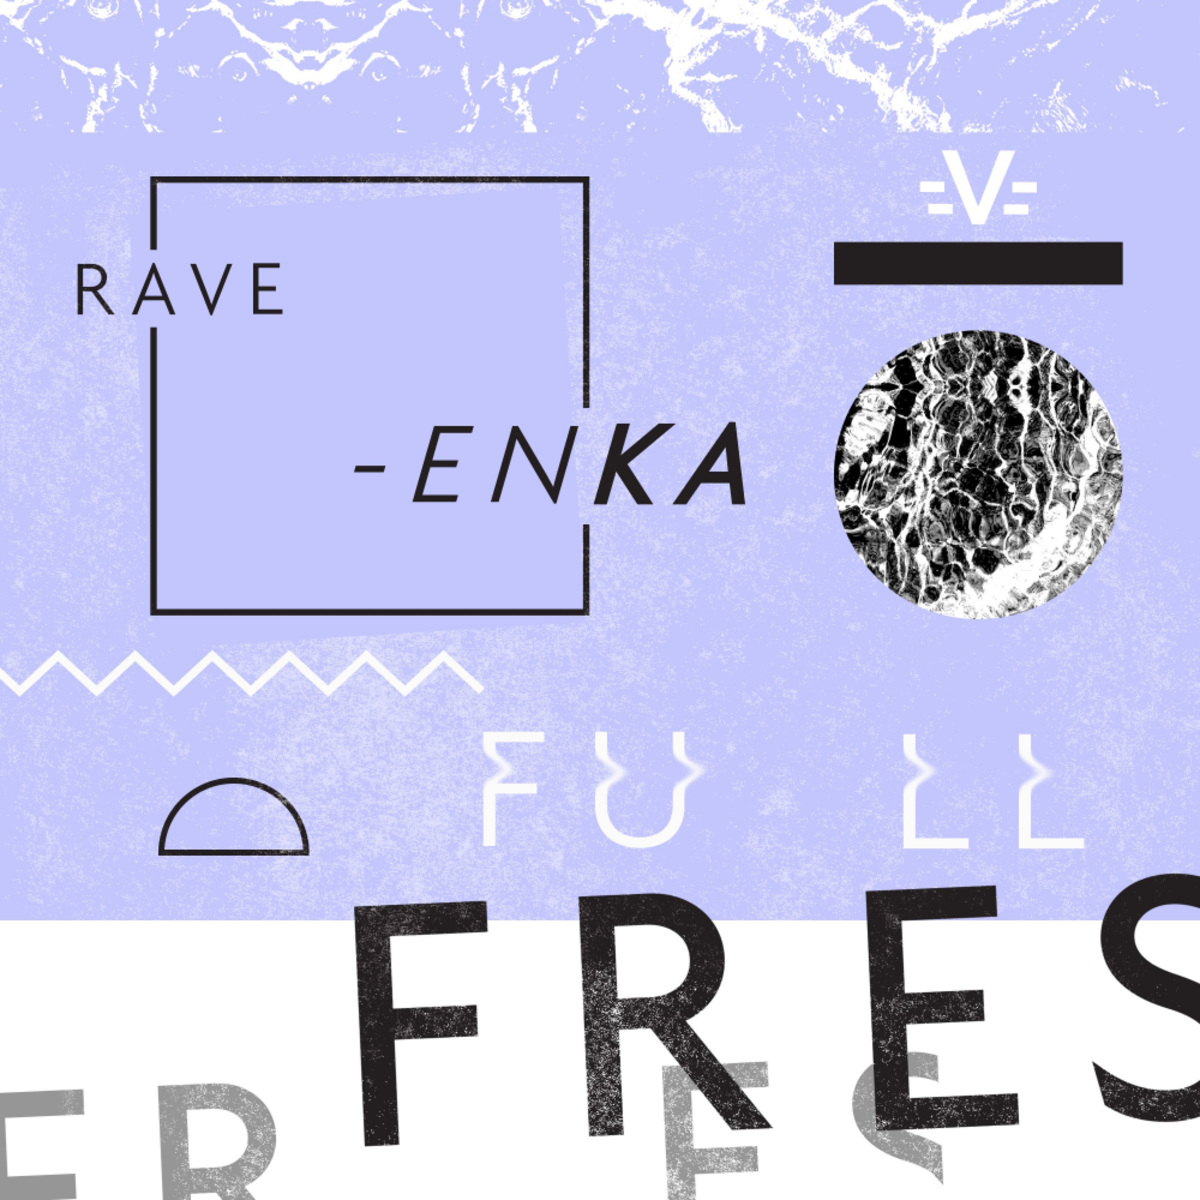 Rave-enka - Full Fres / Paper Recordings